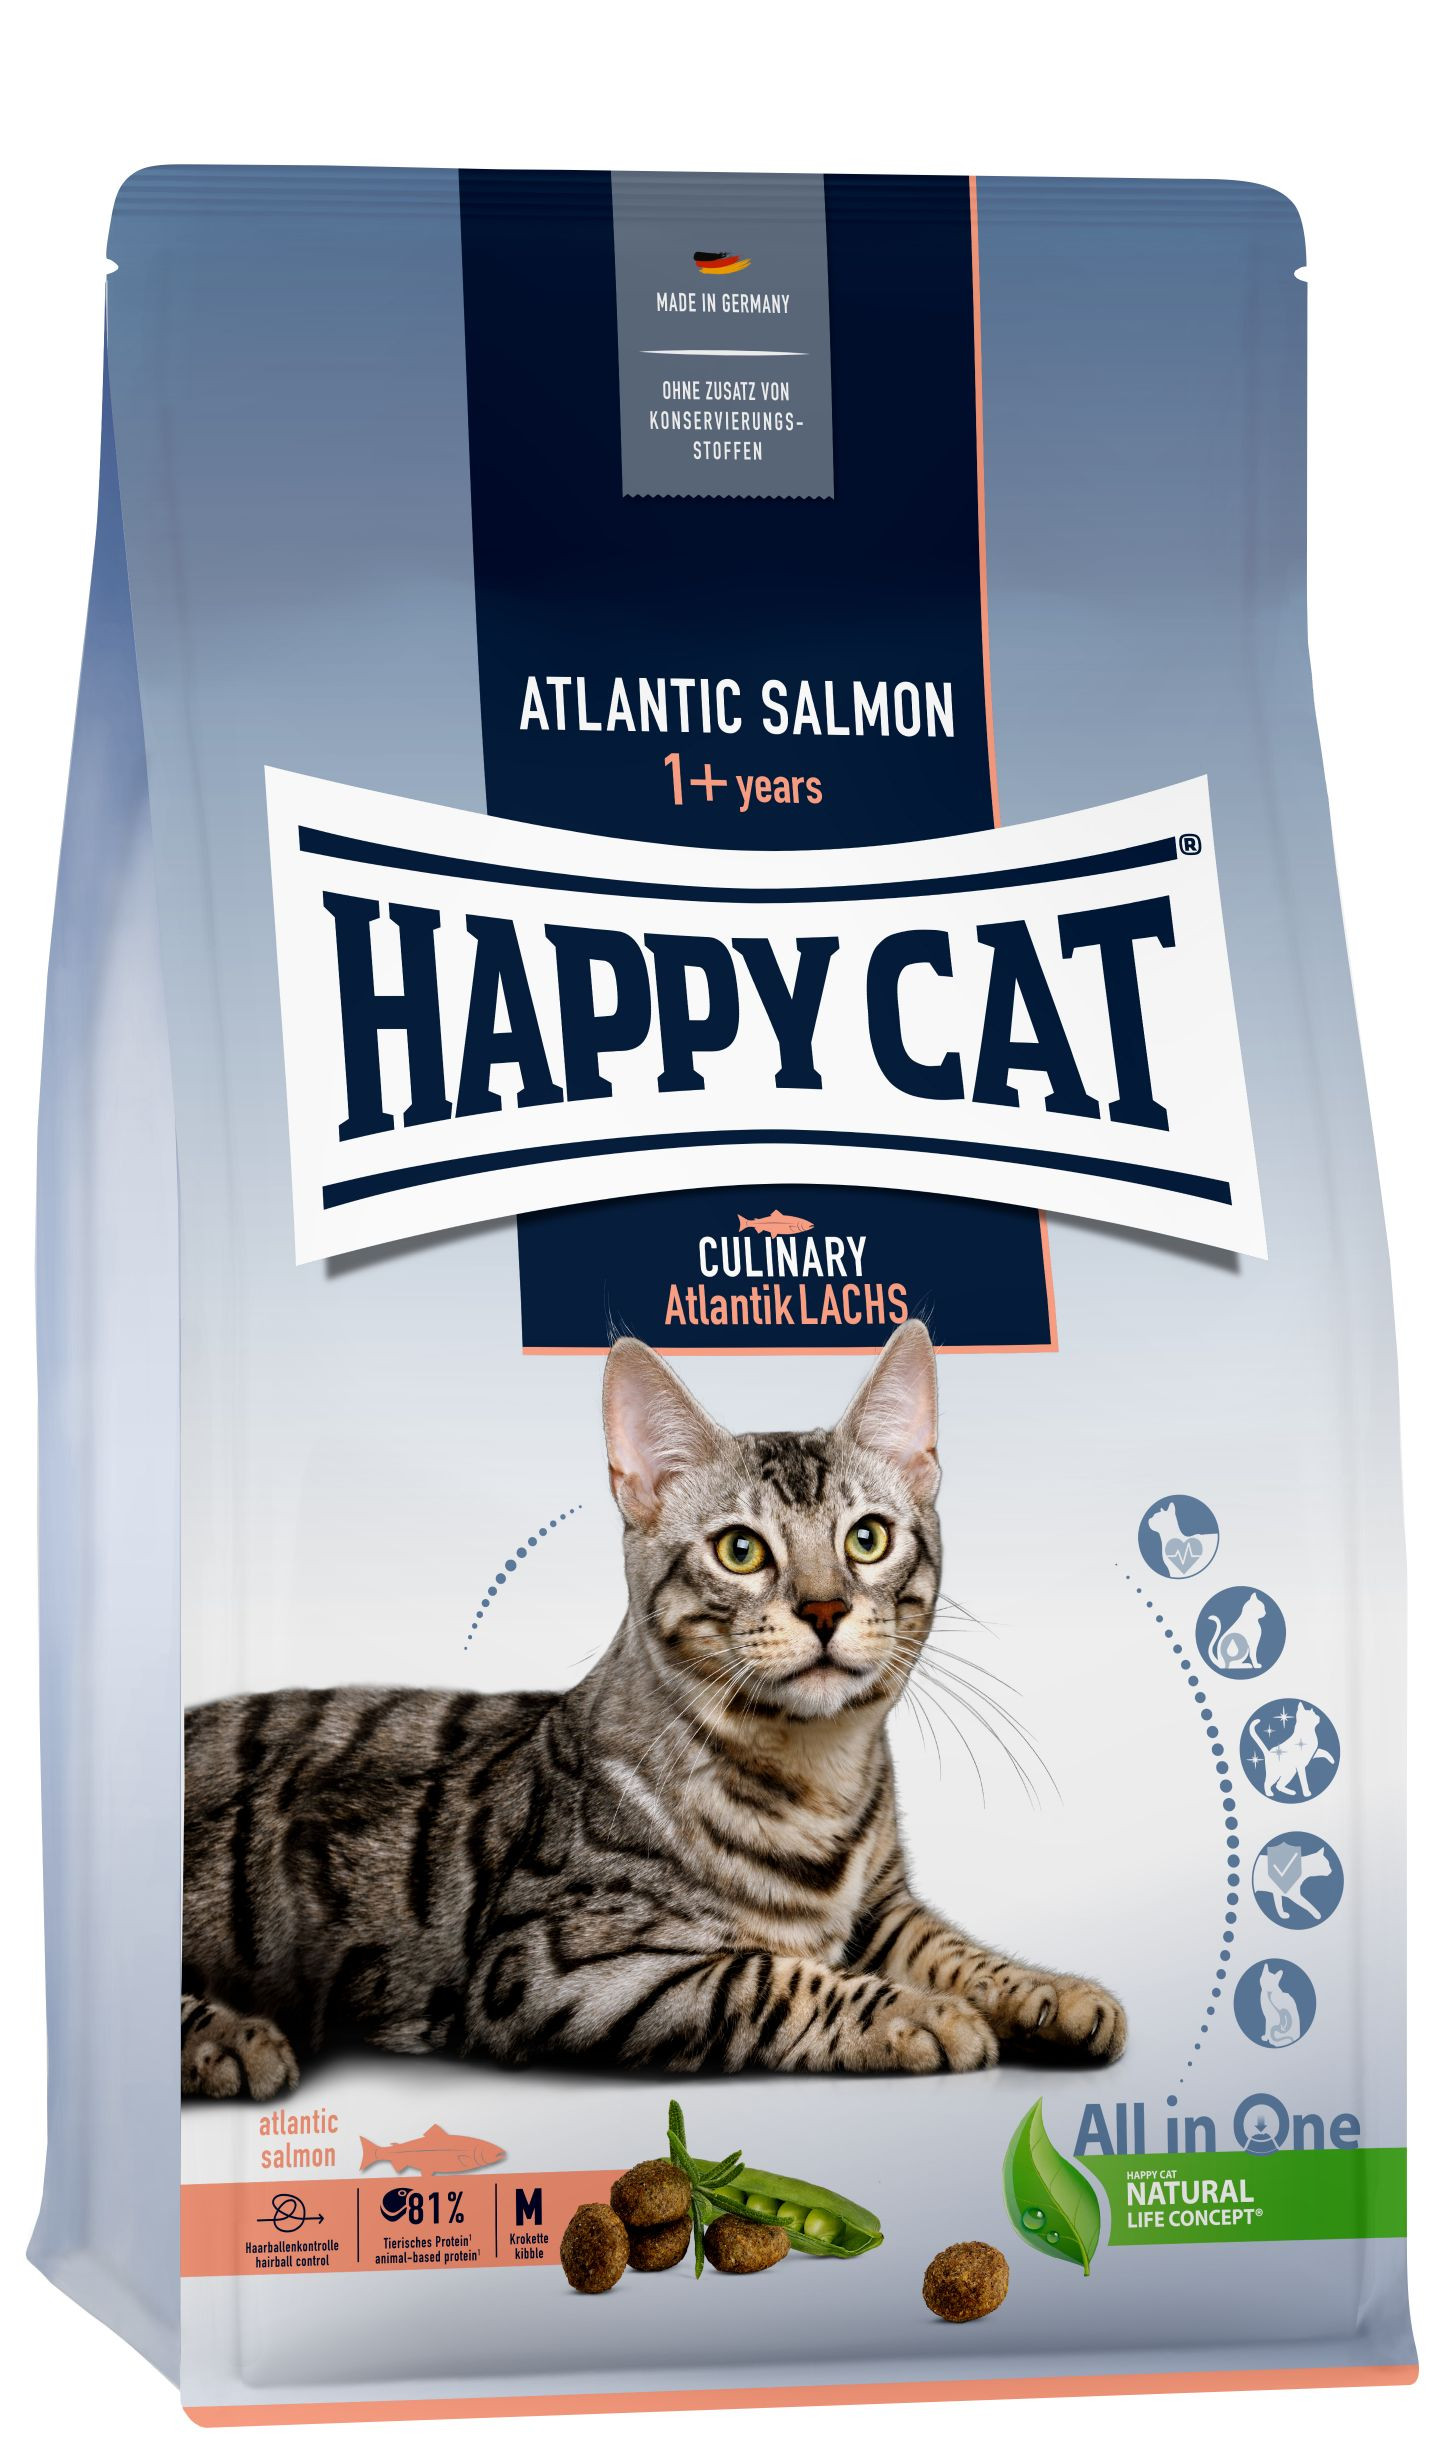 Happy Cat Adult Culinary met Atlantische zalm kattenvoer